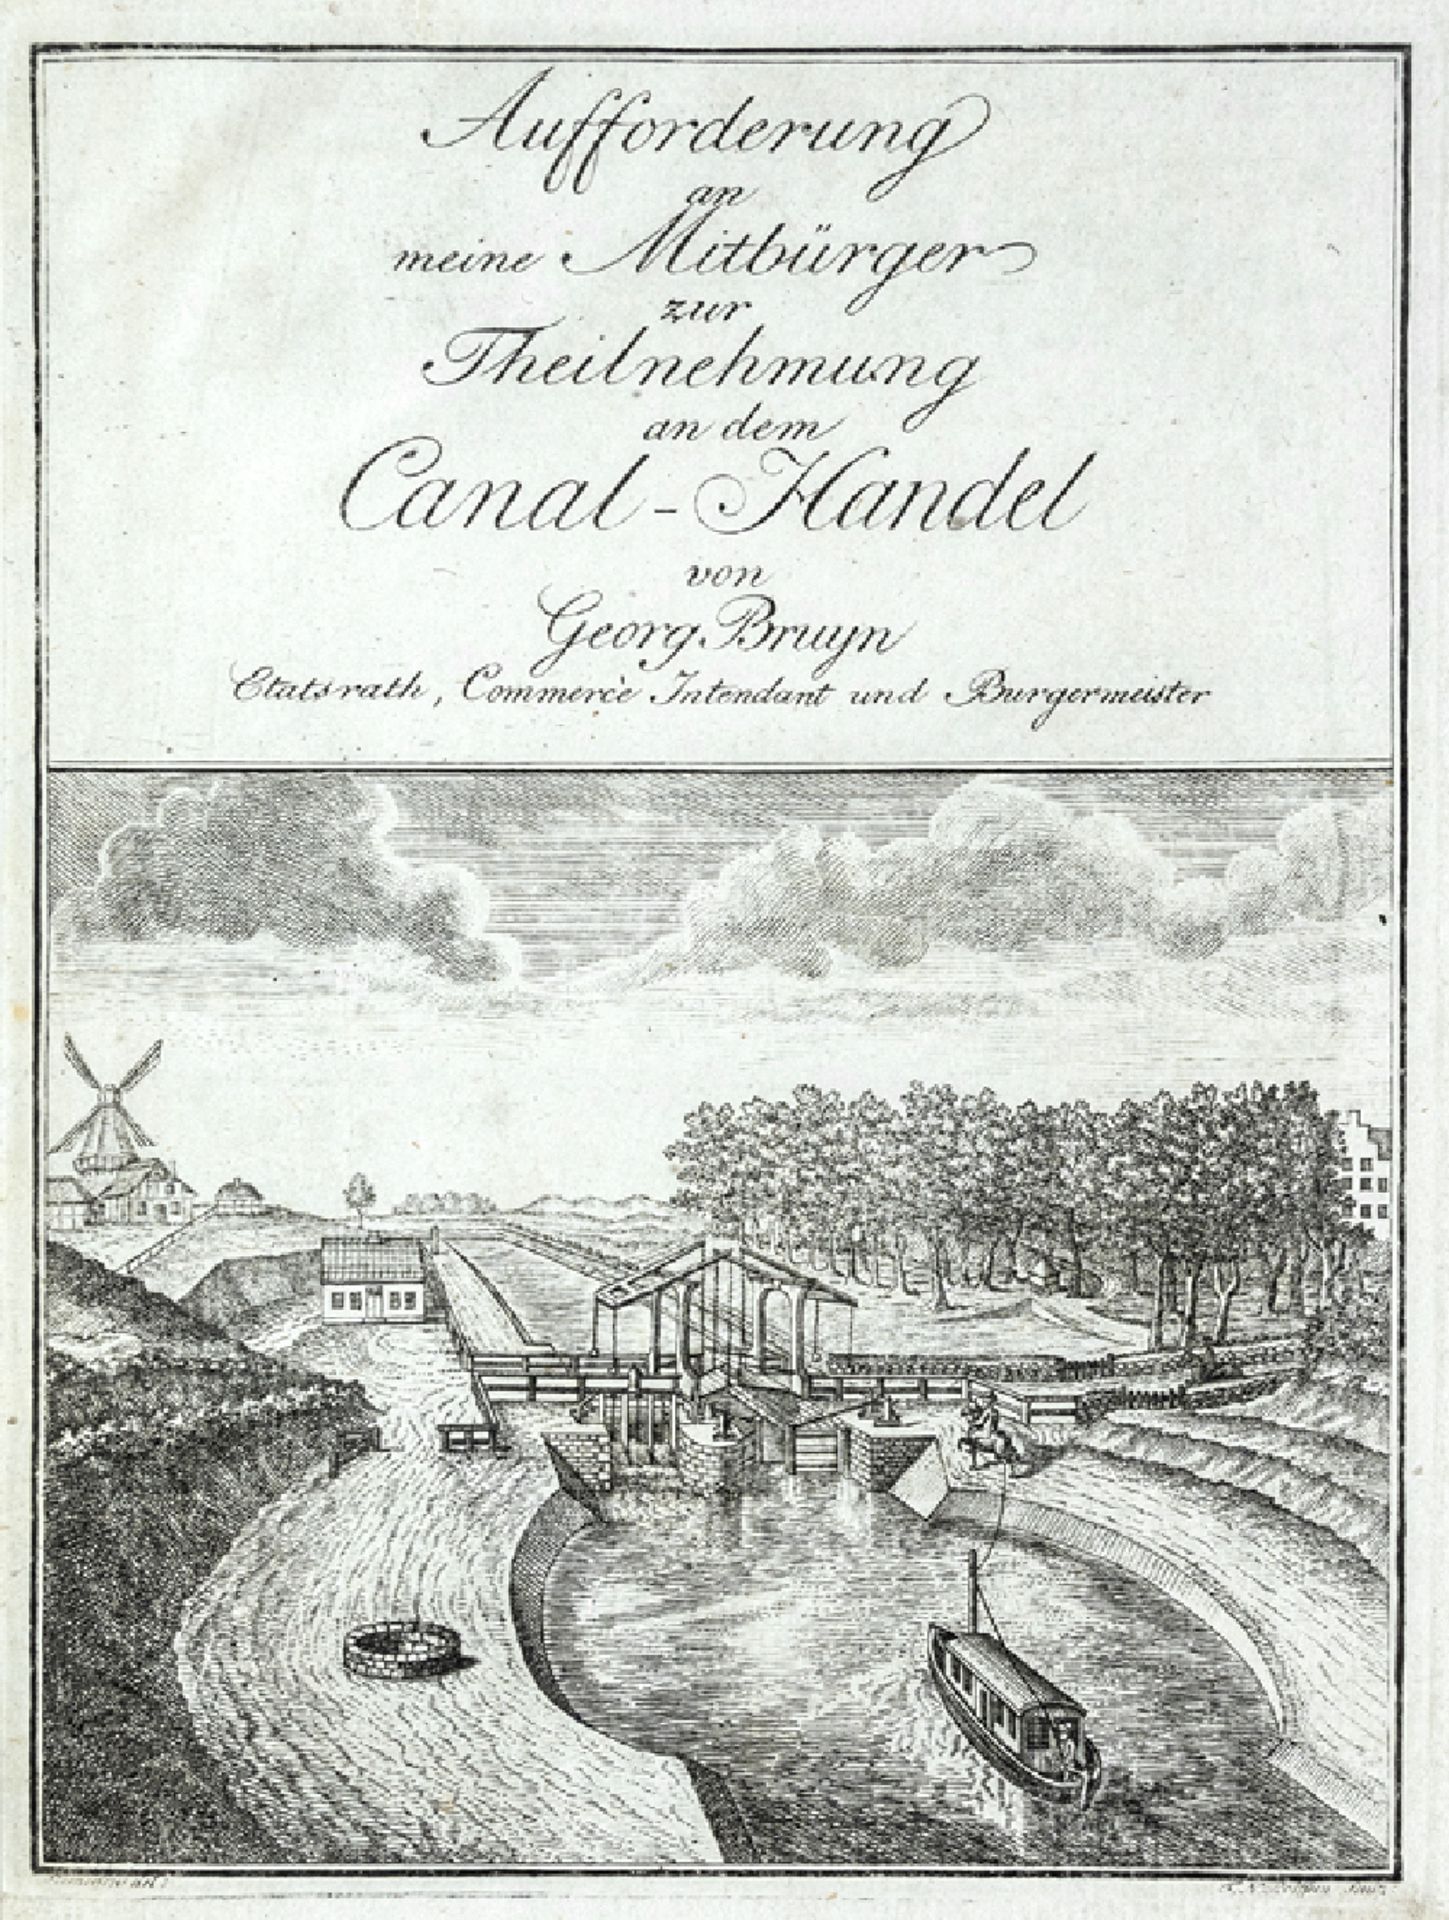 Bruyn - Aufforderung Canal-Handel